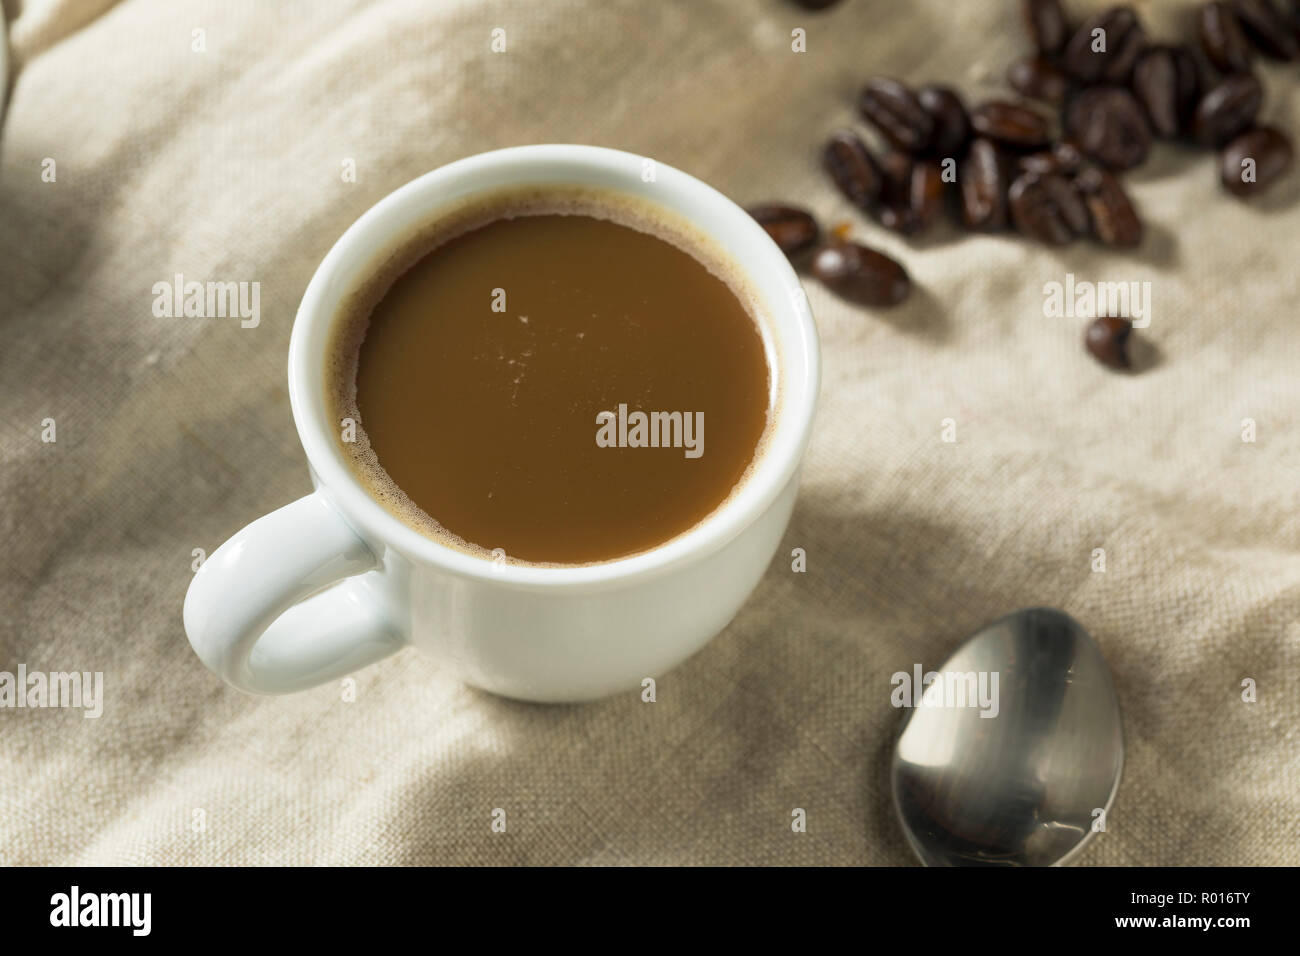 https://c8.alamy.com/comp/R016TY/dark-espresso-coffee-drink-in-a-cup-R016TY.jpg